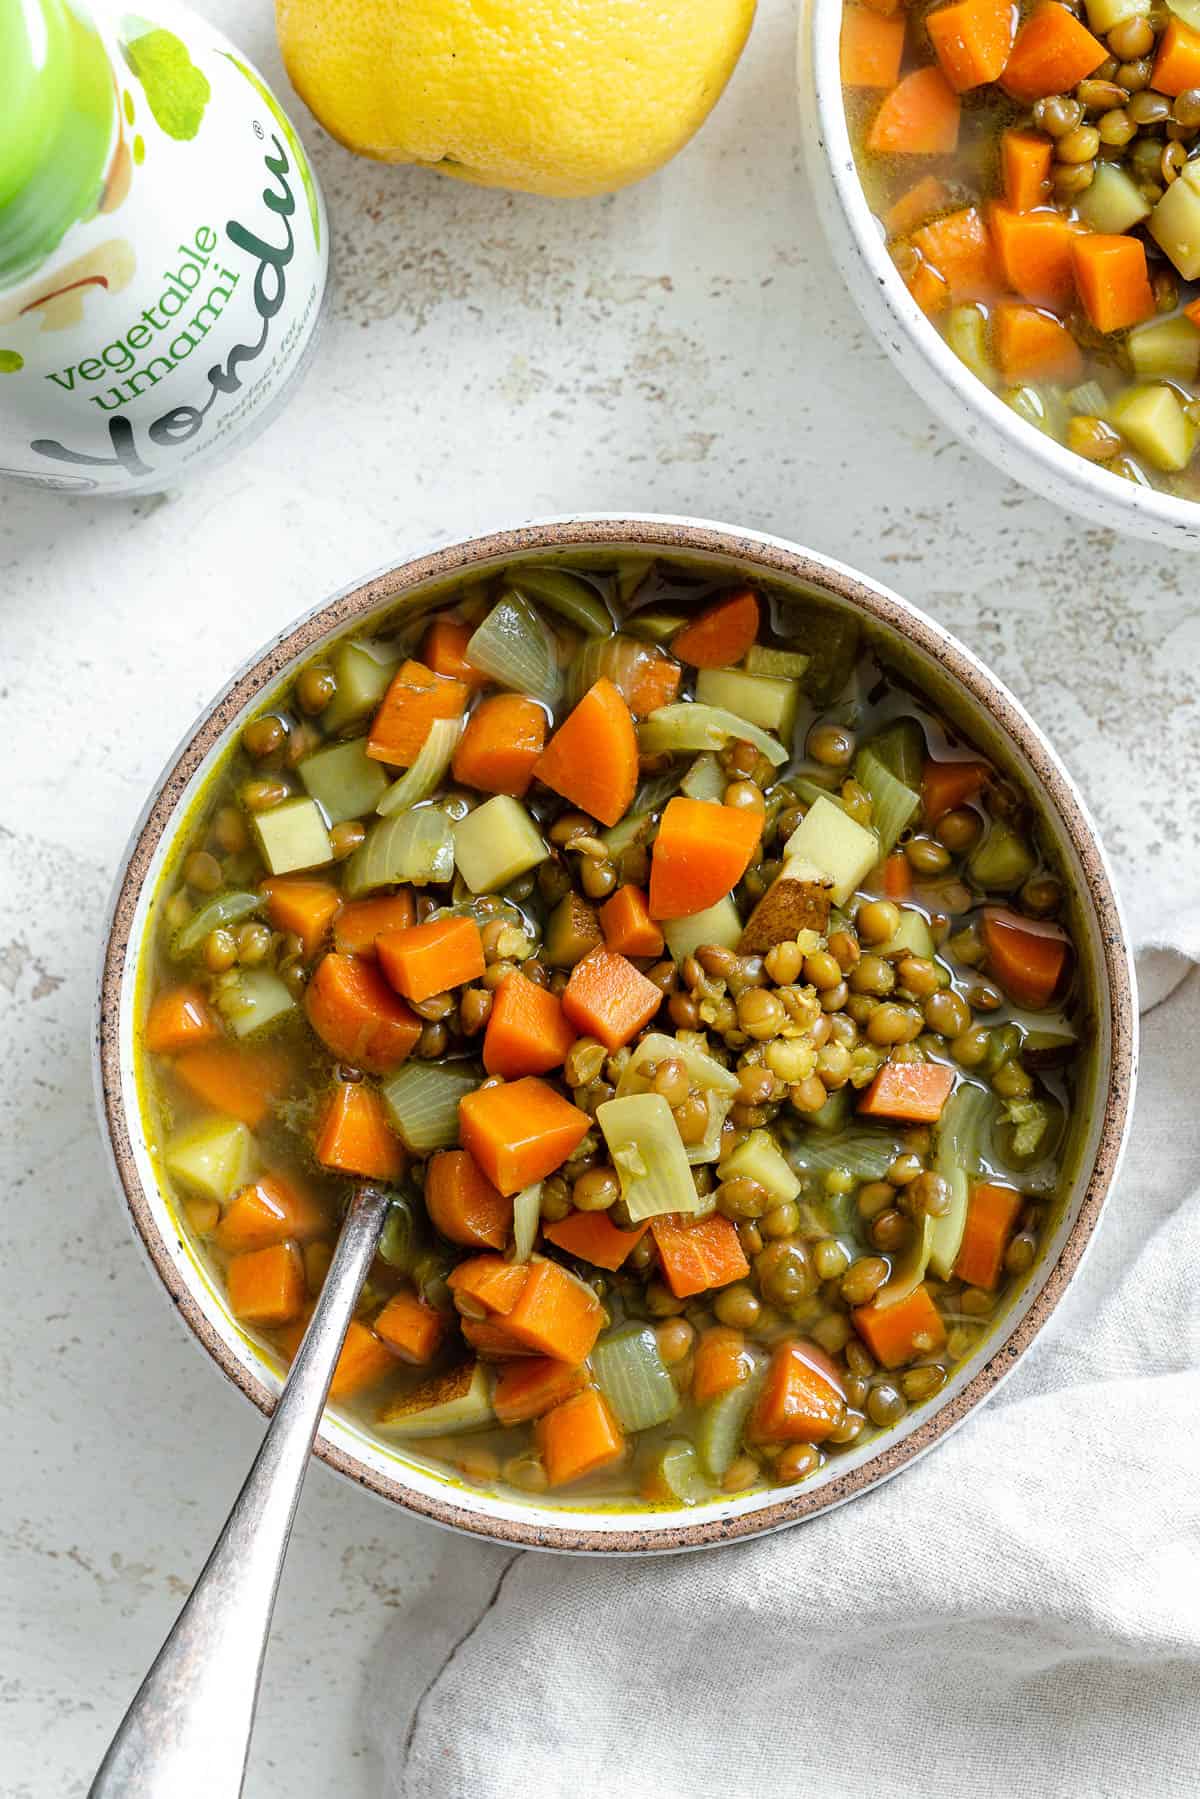 سوپ عدس و هویج را در یک کاسه در مقابل یک سطح سبک کامل کنید